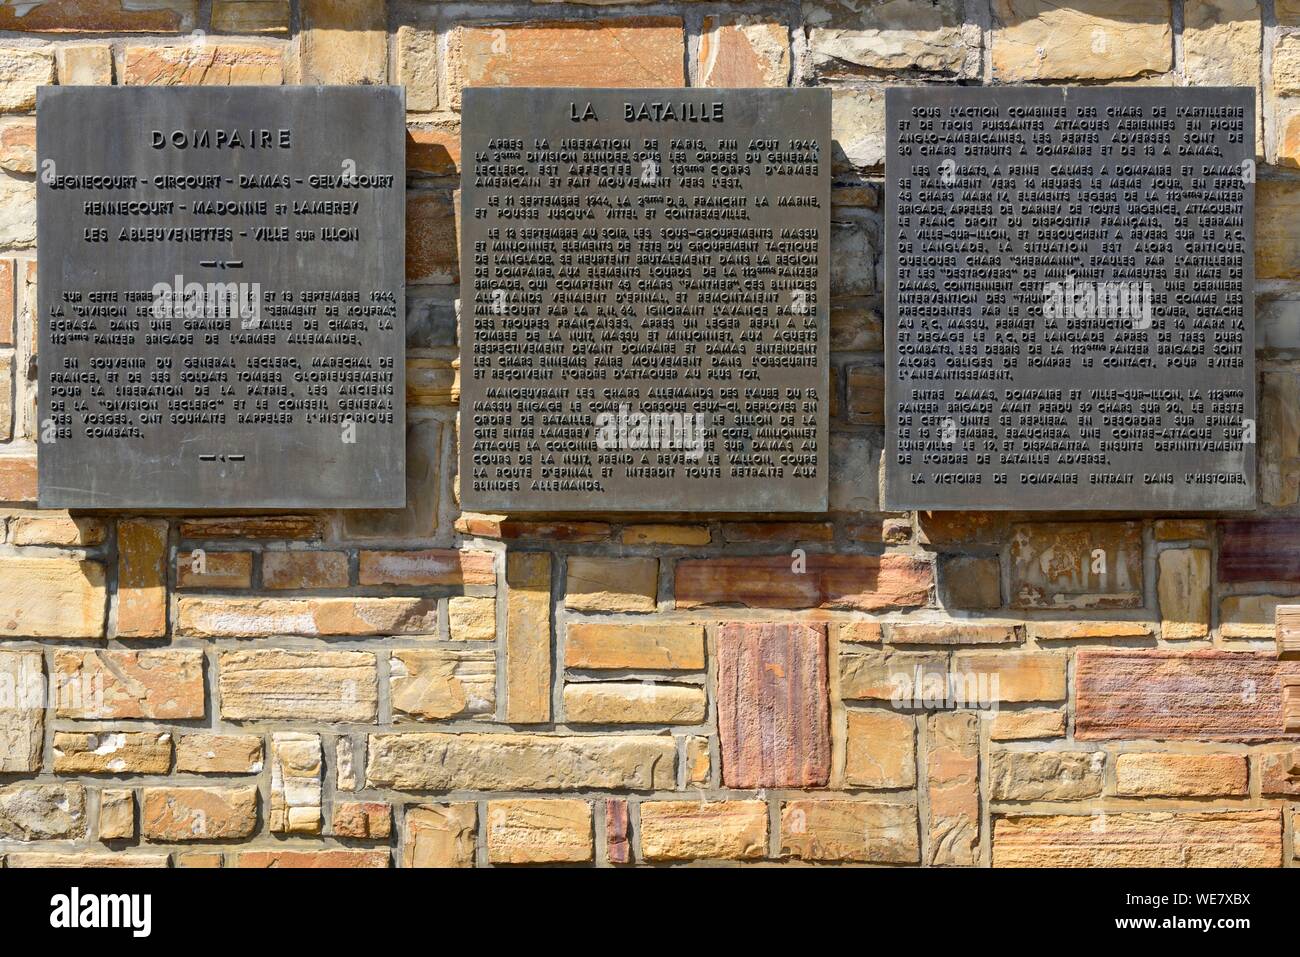 Francia, Vosges, Dompaire, memoriale della battaglia di Dompaire della seconda guerra mondiale la battaglia di serbatoi che ha avuto luogo dal 12 al 15 settembre 1944, targhe commemorative Foto Stock